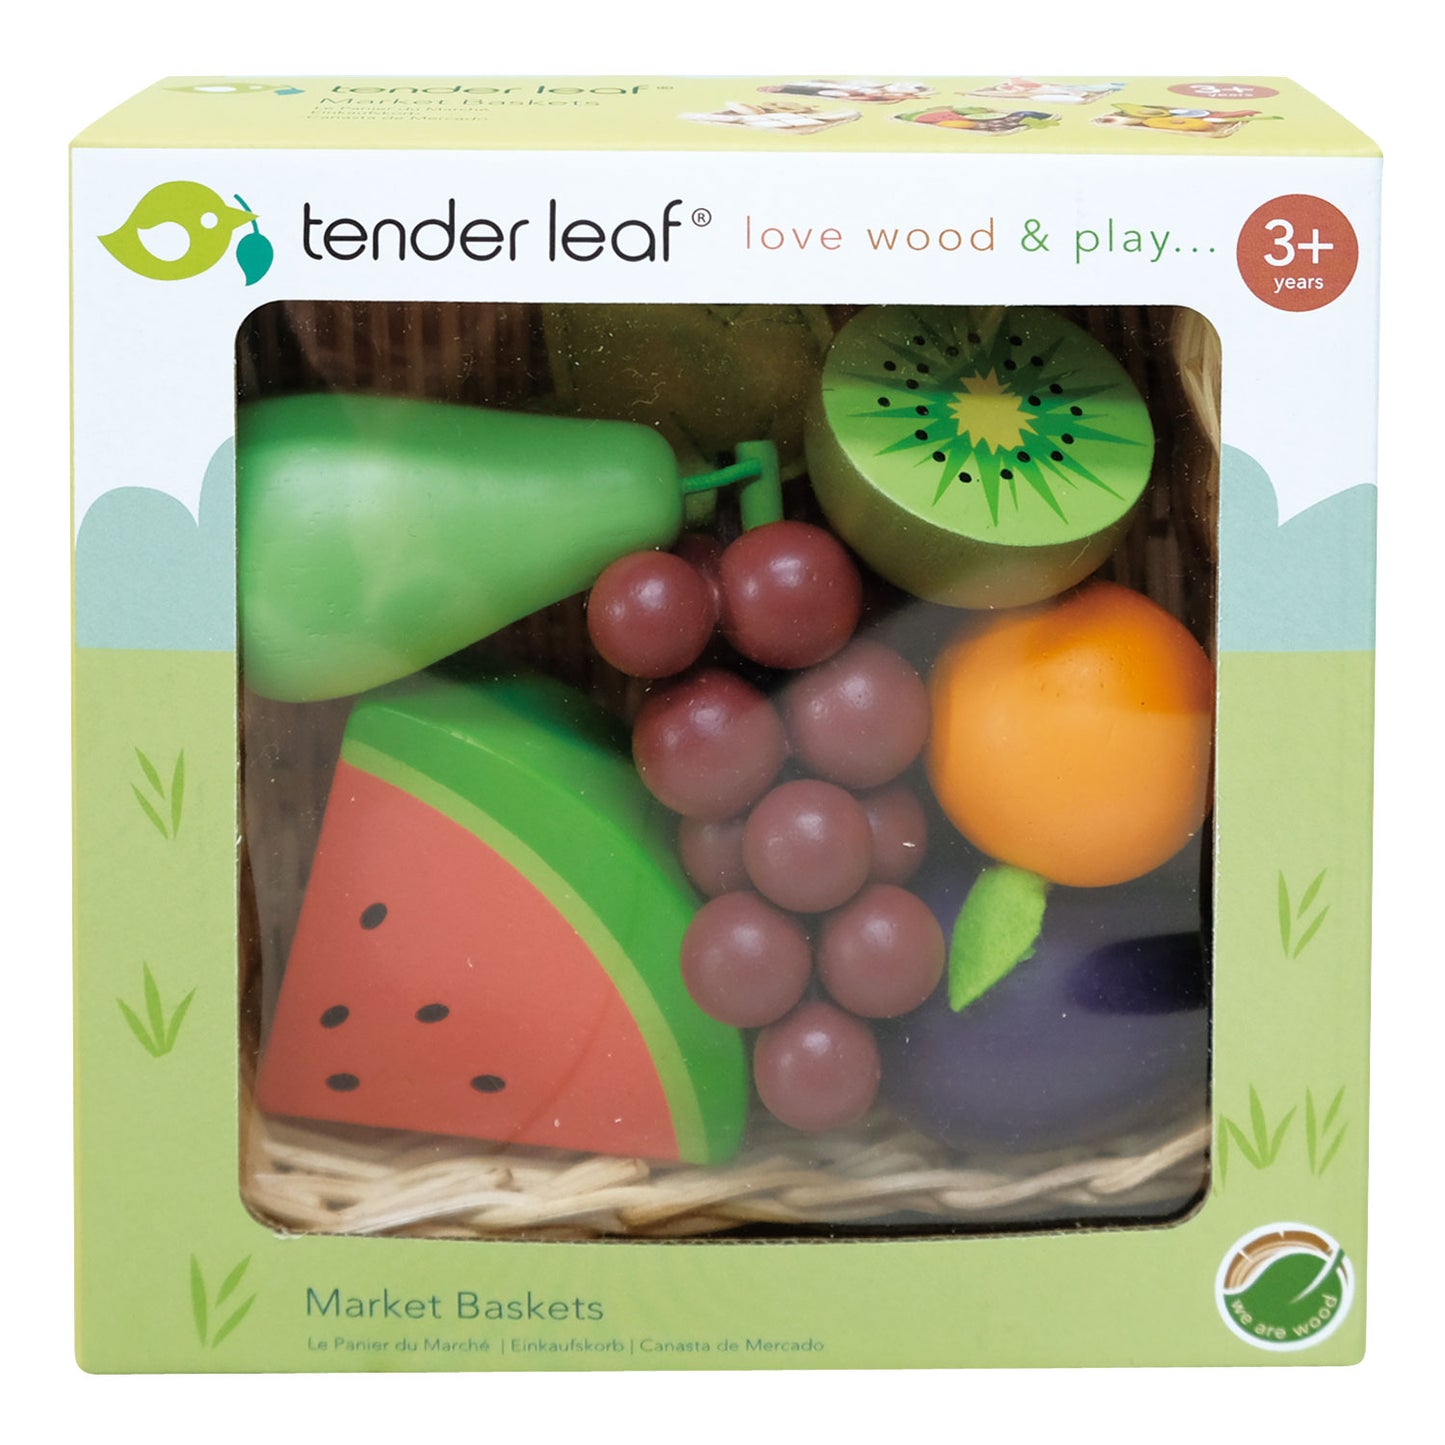 Packaged wooden fruit basket set by Tender Leaf